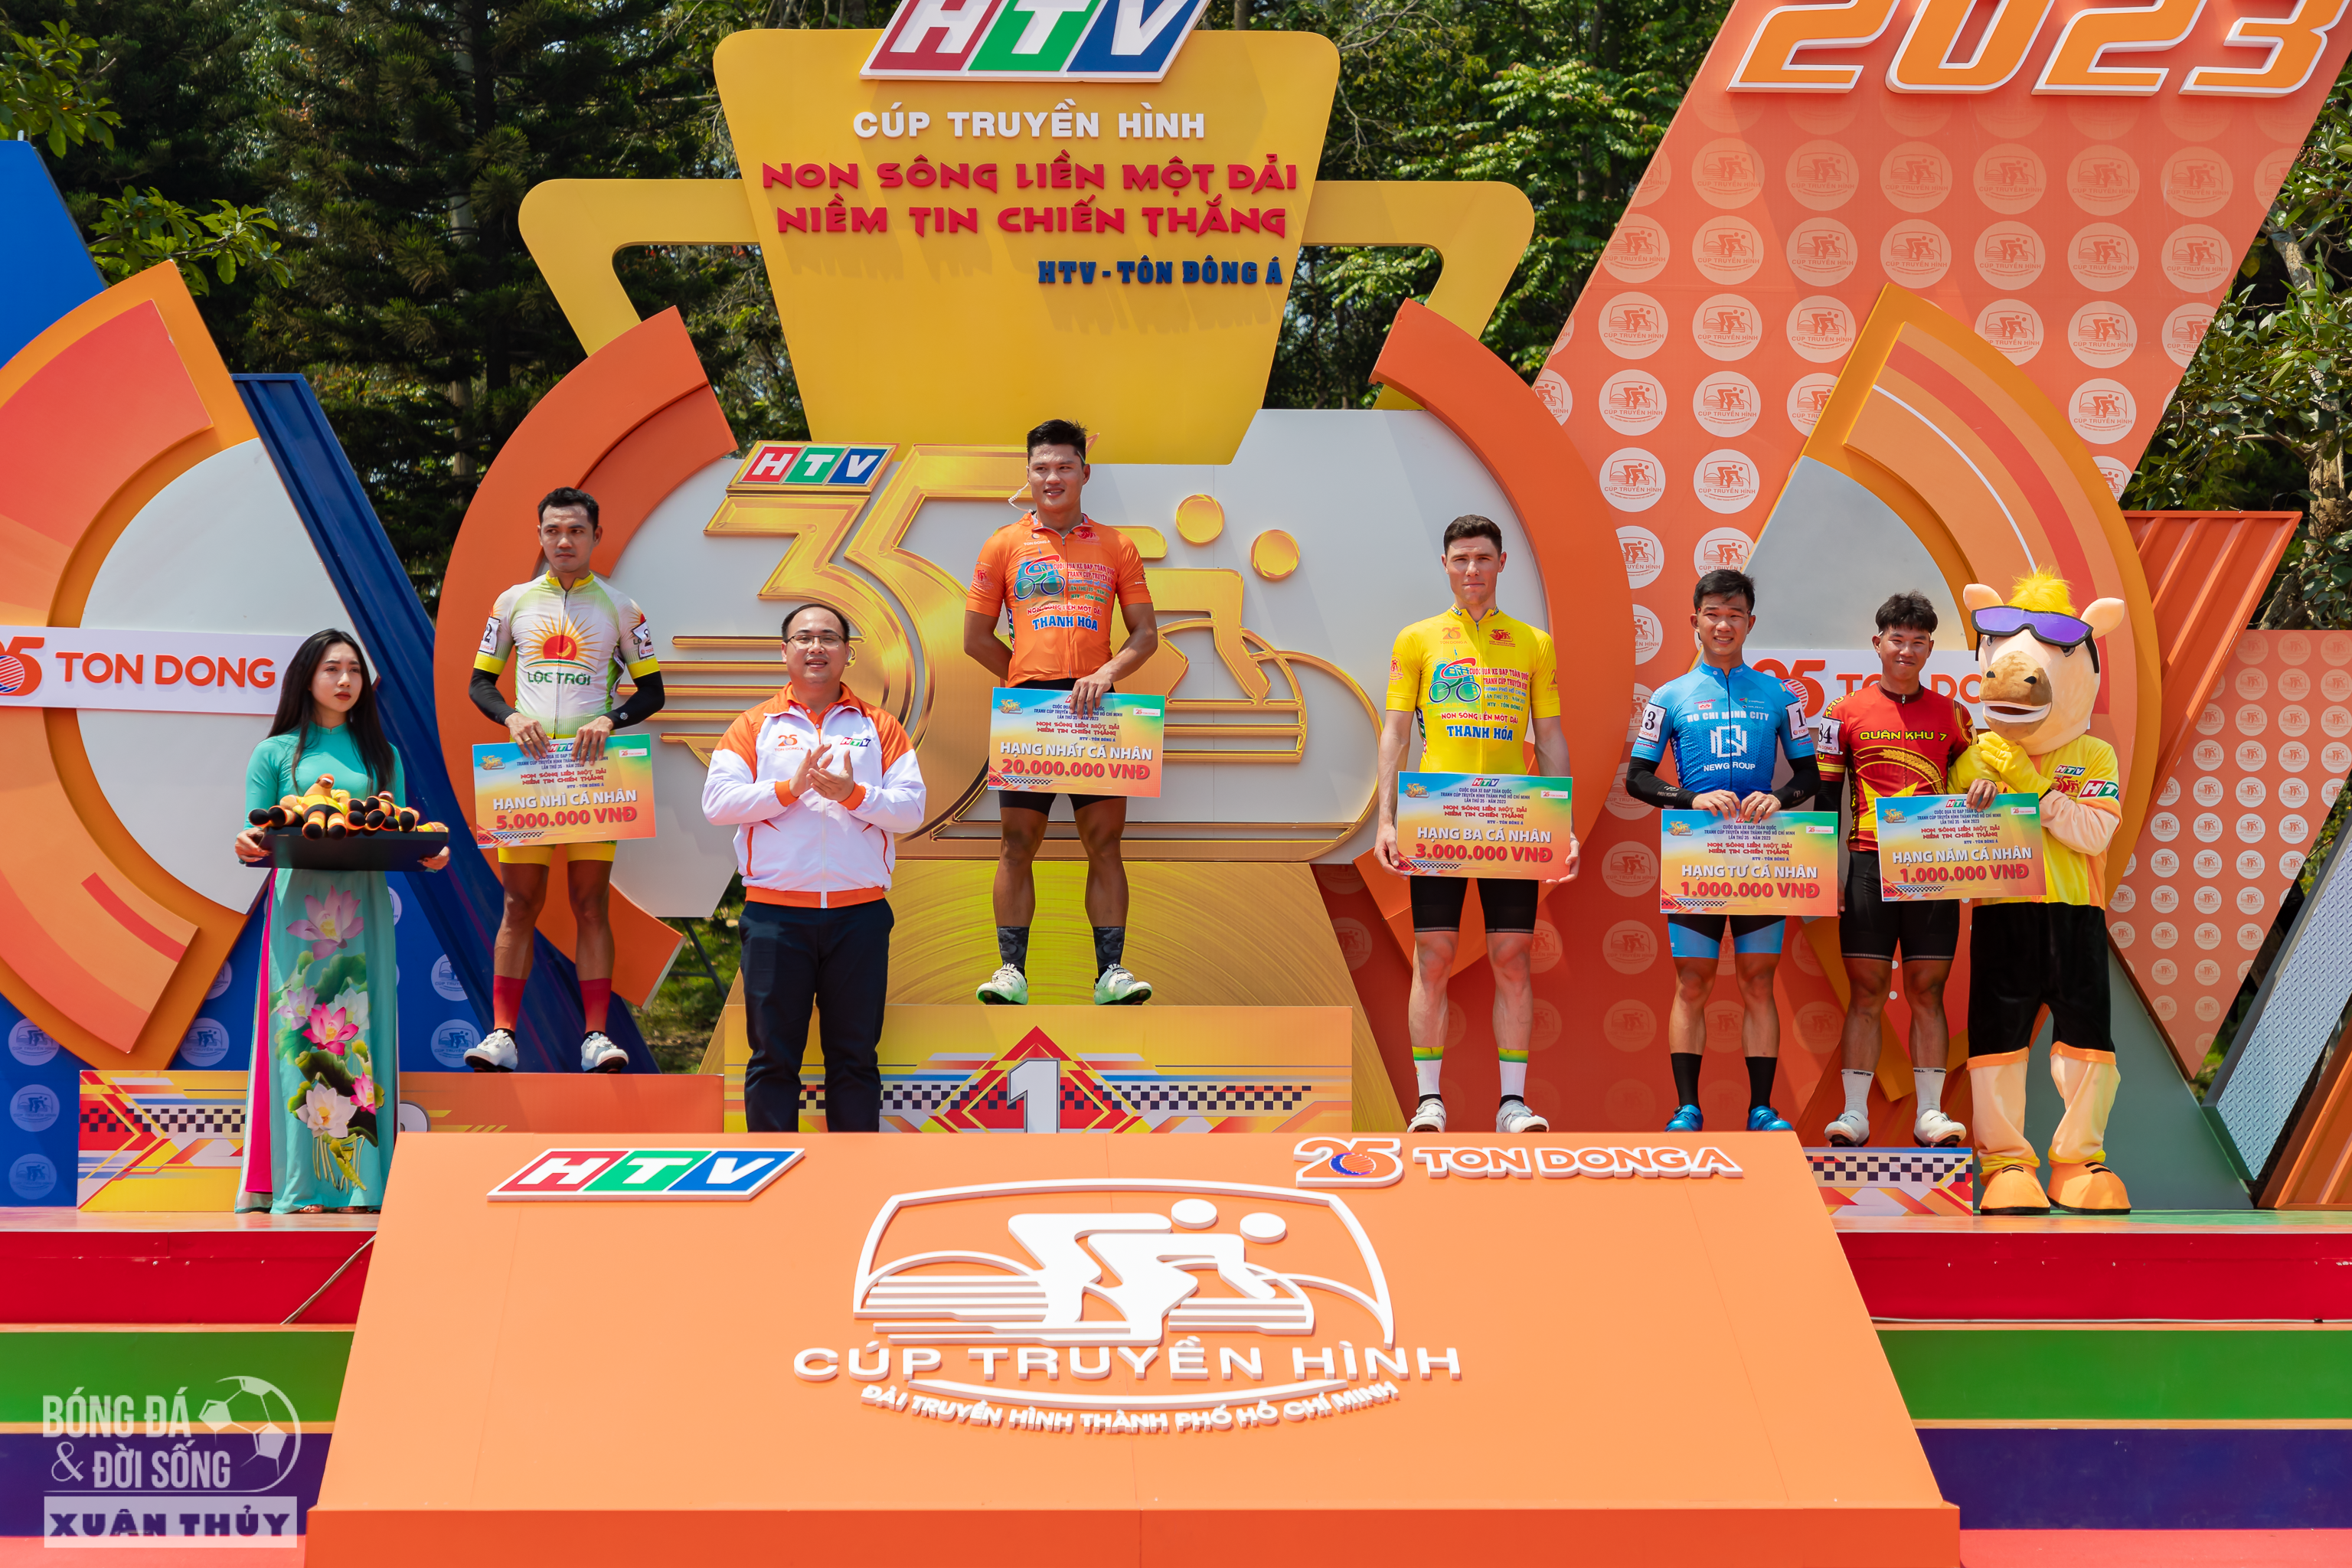 Tay đua Trần Tuấn Kiệt tiếp tục về nhất chặng Thanh Hoá – Nghệ An tại giải đua xe đạp toàn quốc Cúp Truyền hình TP Hồ Chí Minh 2023